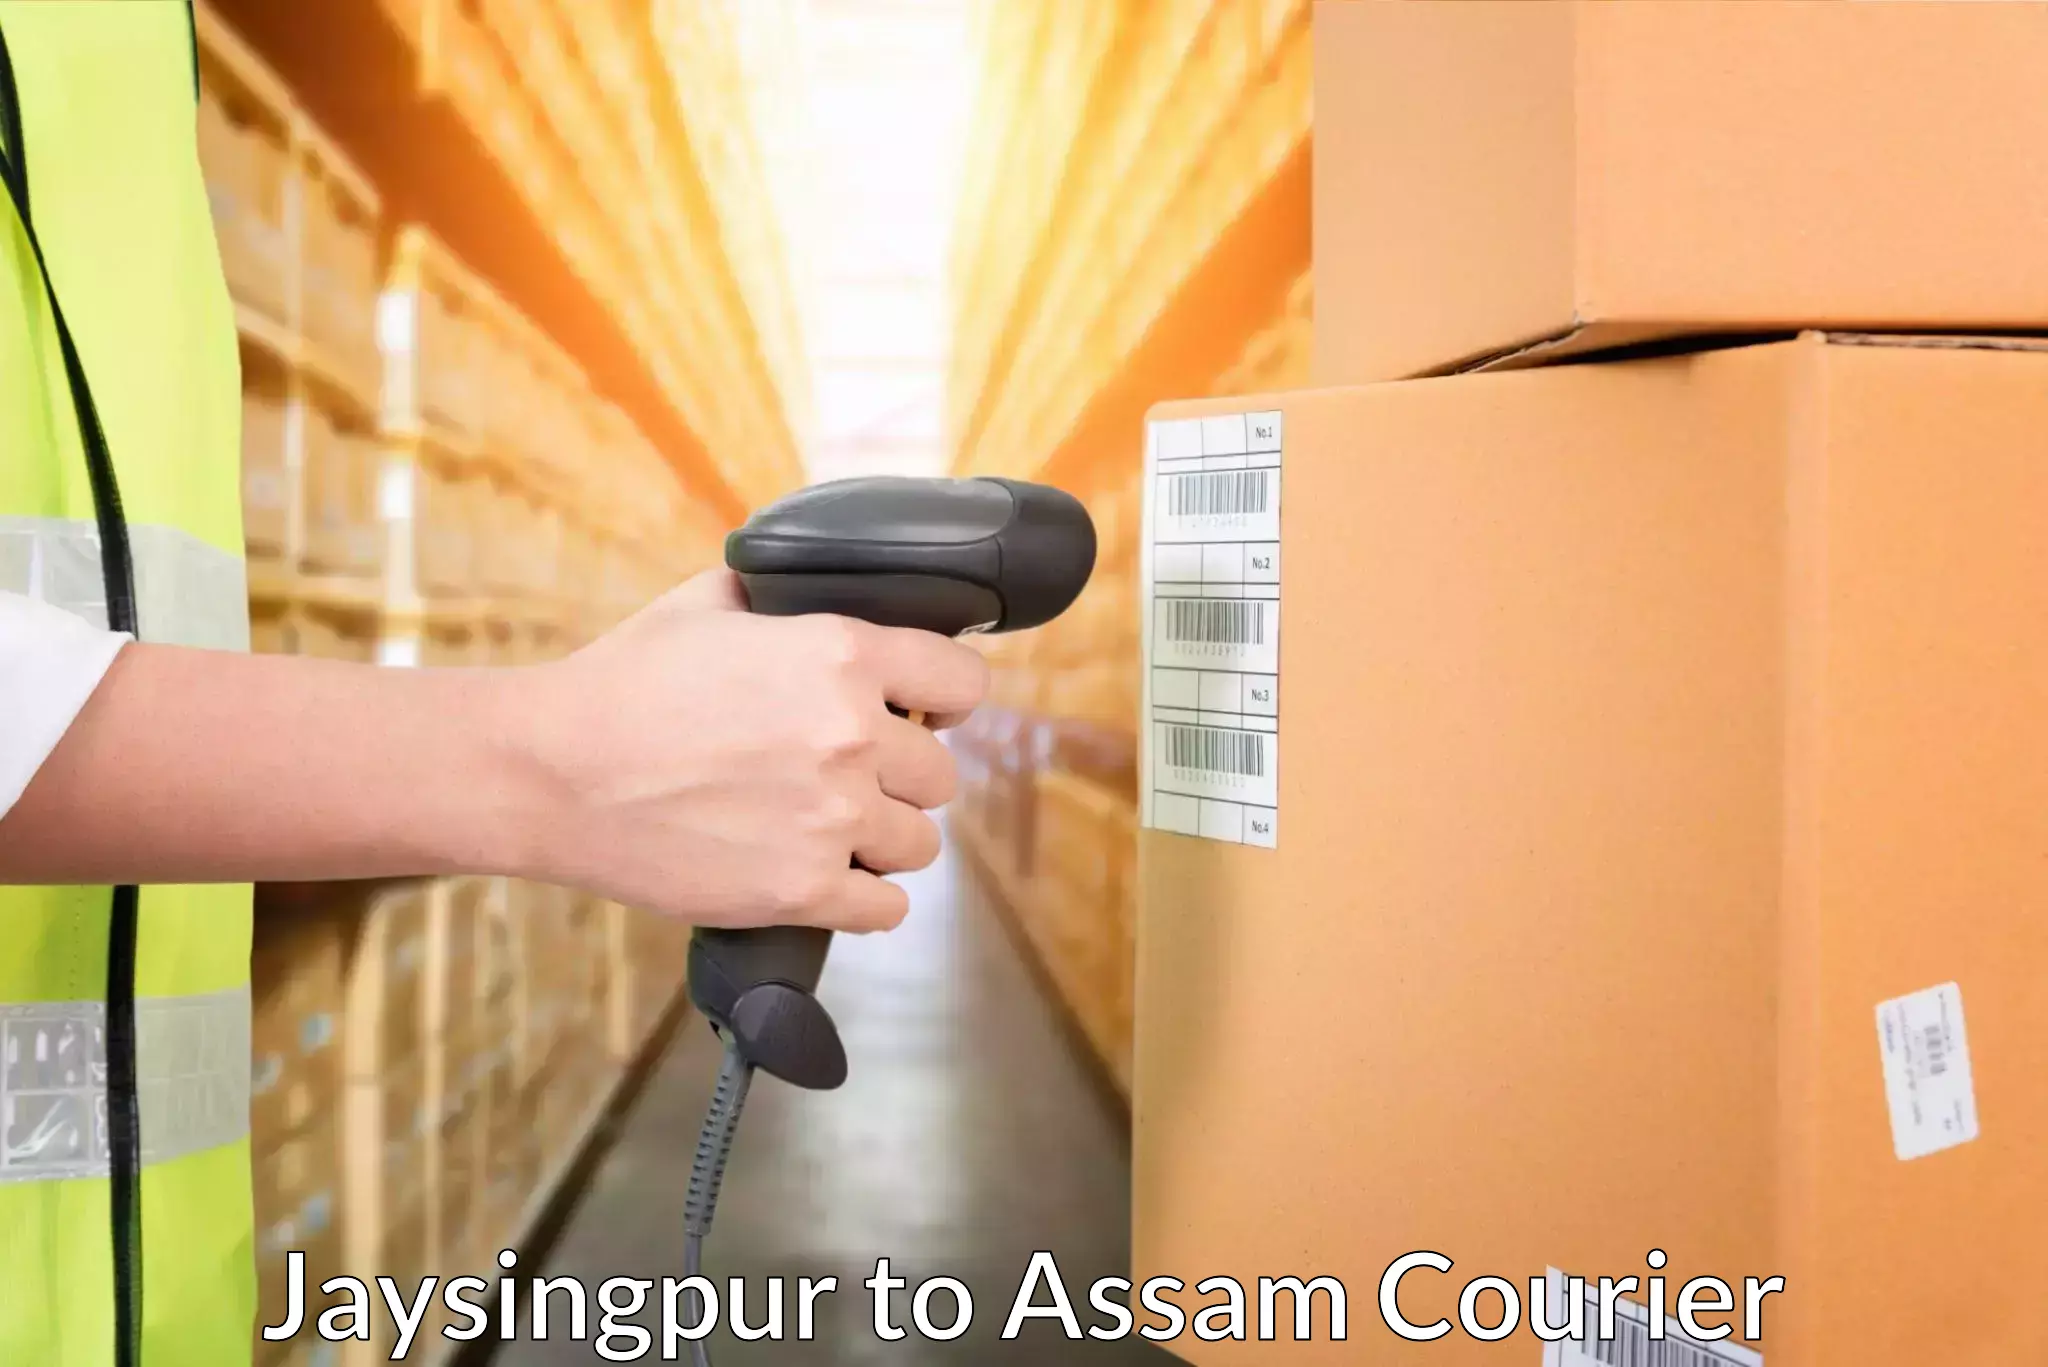 Door-to-door shipping in Jaysingpur to Dibrugarh University